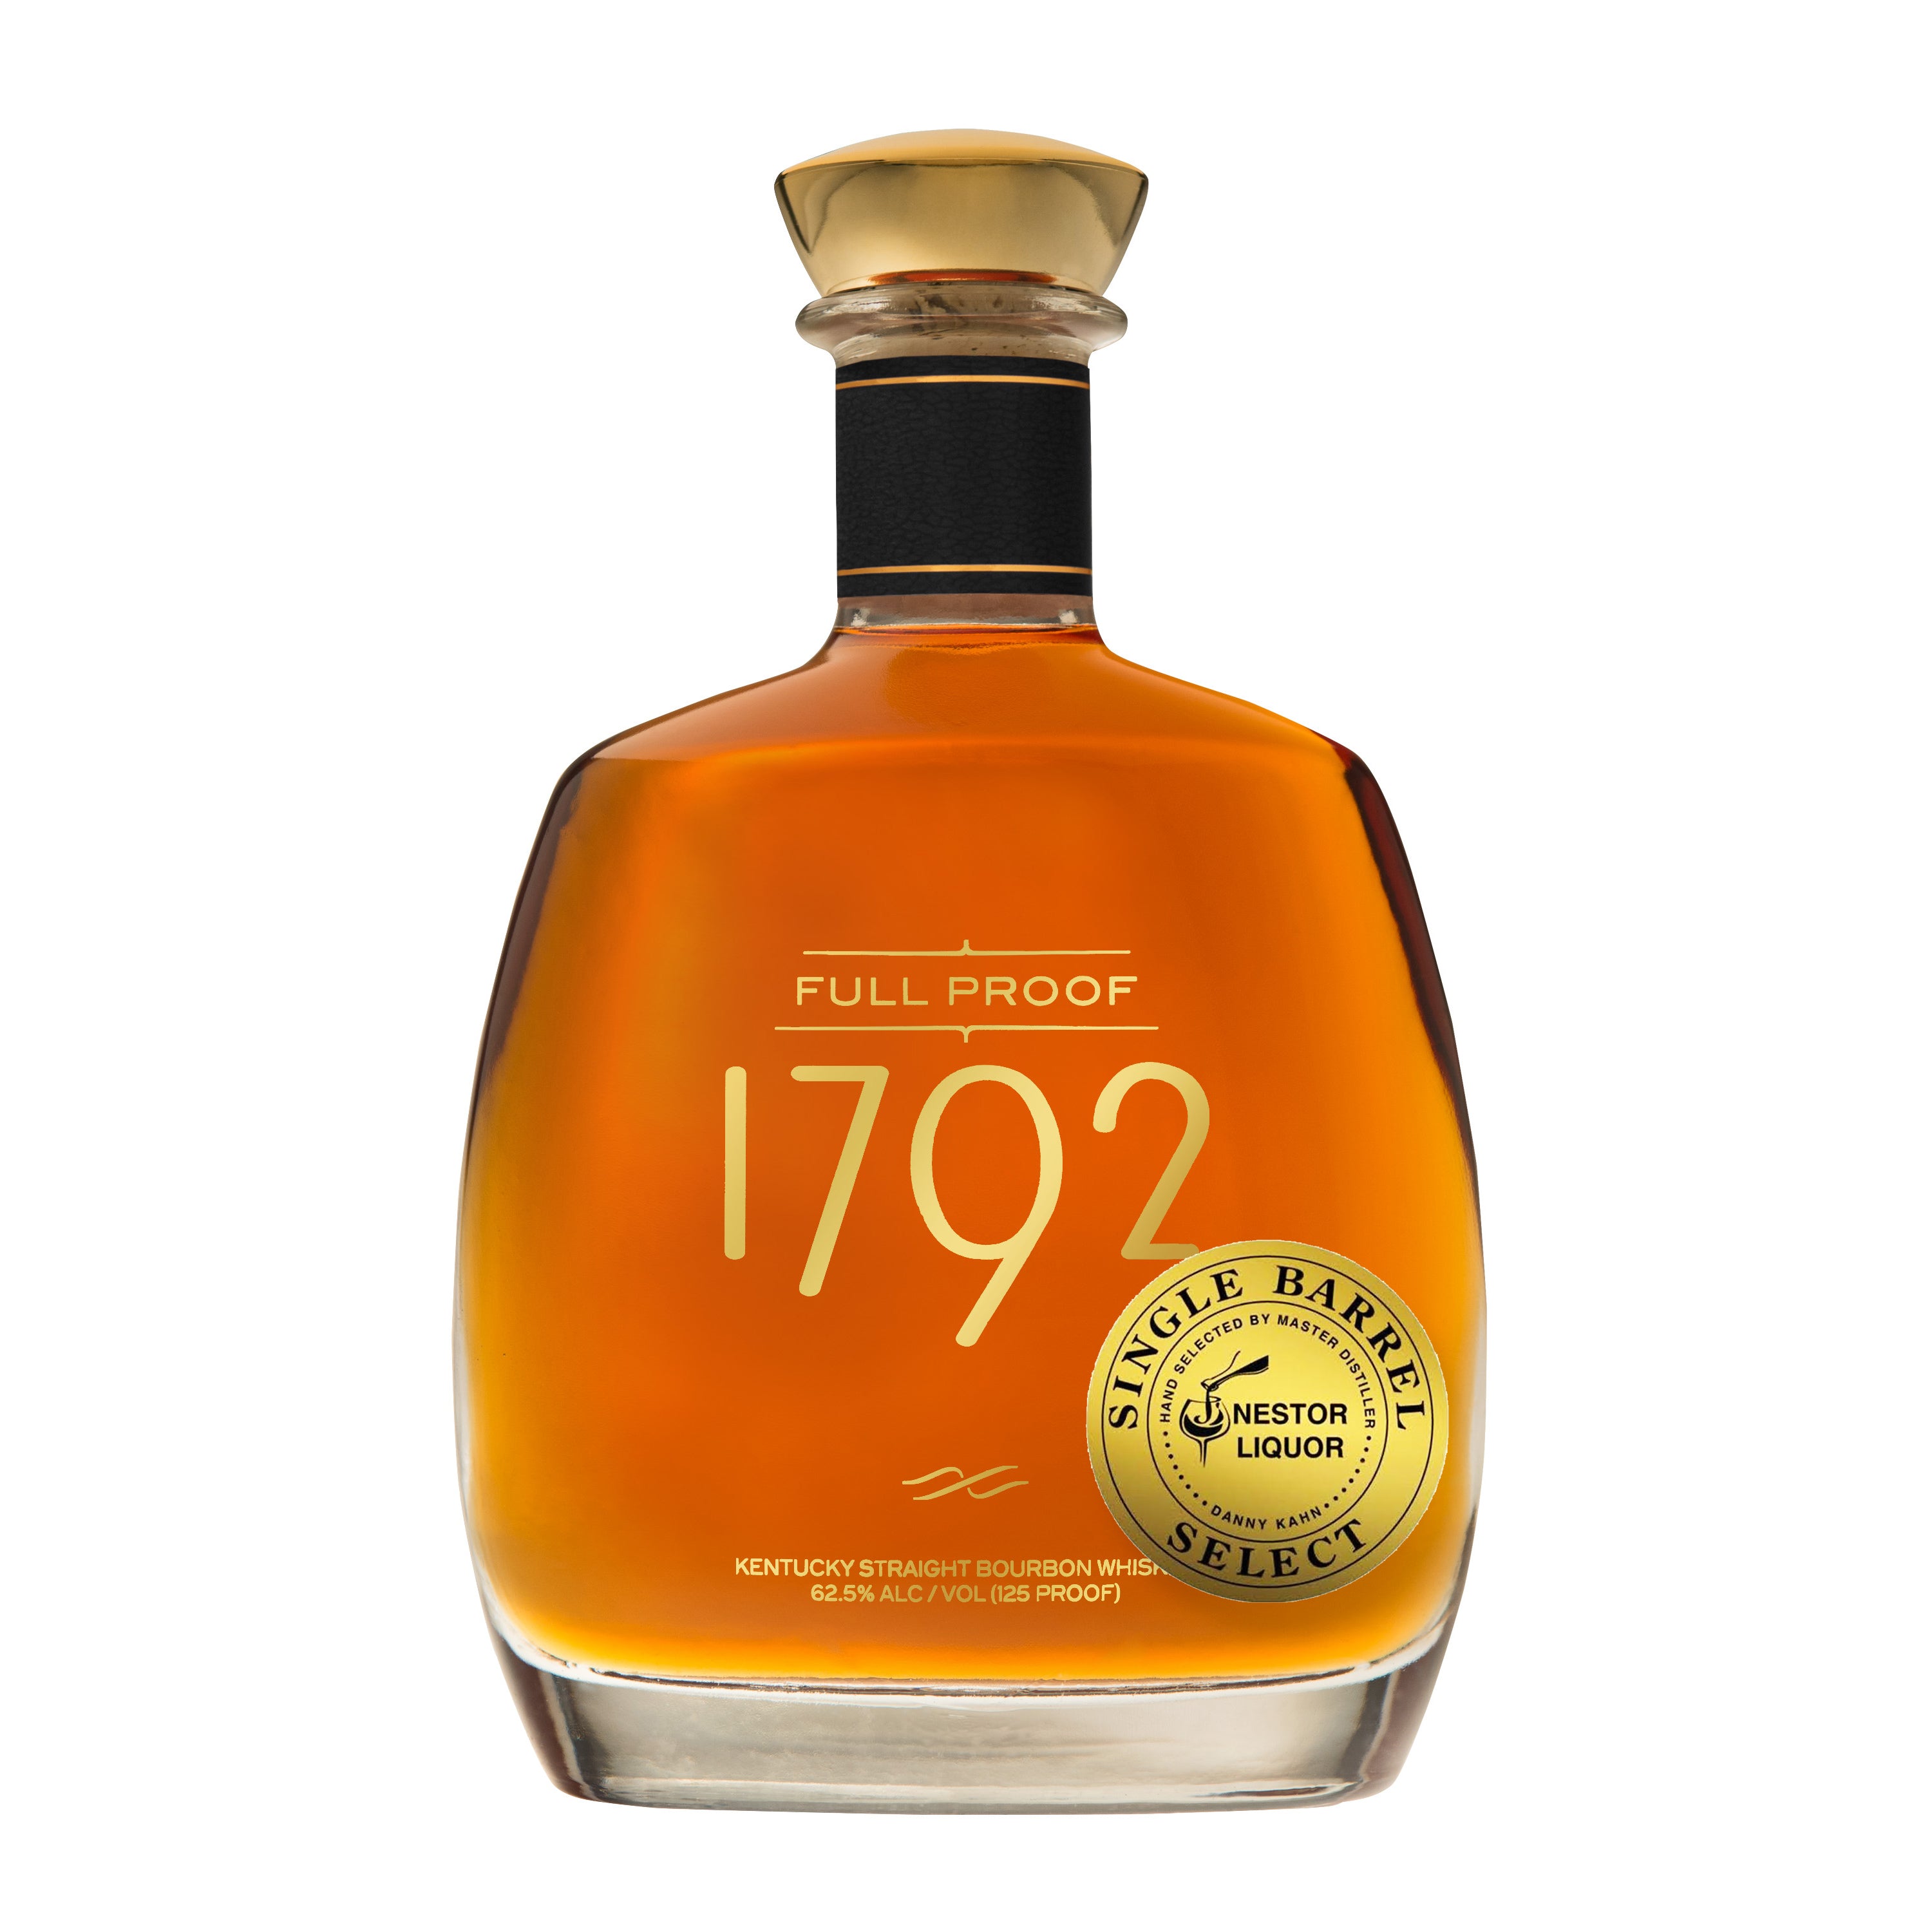 1792 Full Proof ‘Nestor Liquor’ Single Barrel Hand Selected by Danny Kahn 750ml_nestor liquor